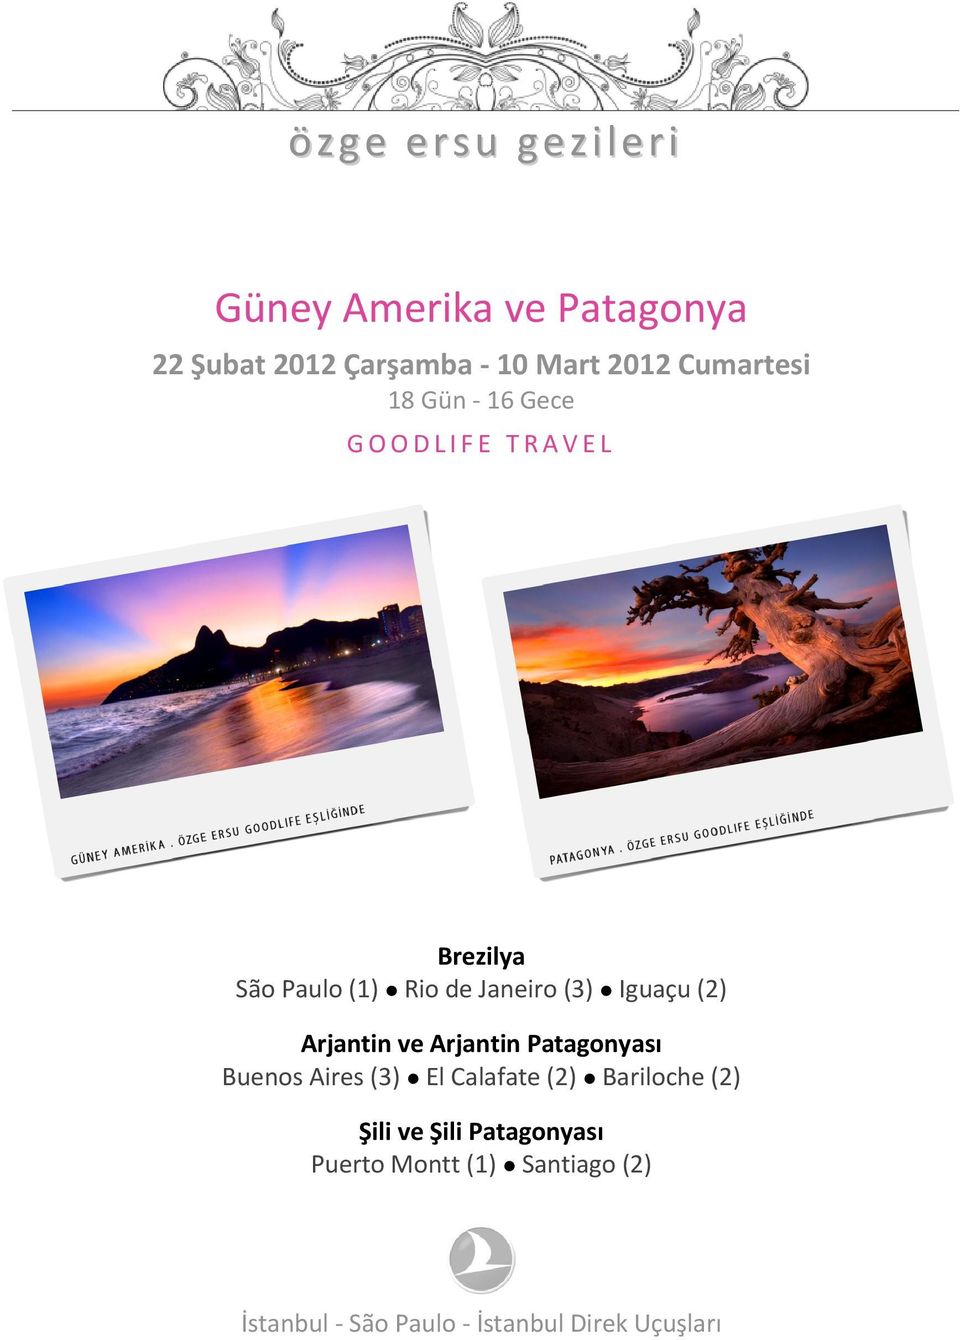 Iguaçu (2) Arjantin ve Arjantin Patagonyası Buenos Aires (3) El Calafate (2) Bariloche (2)